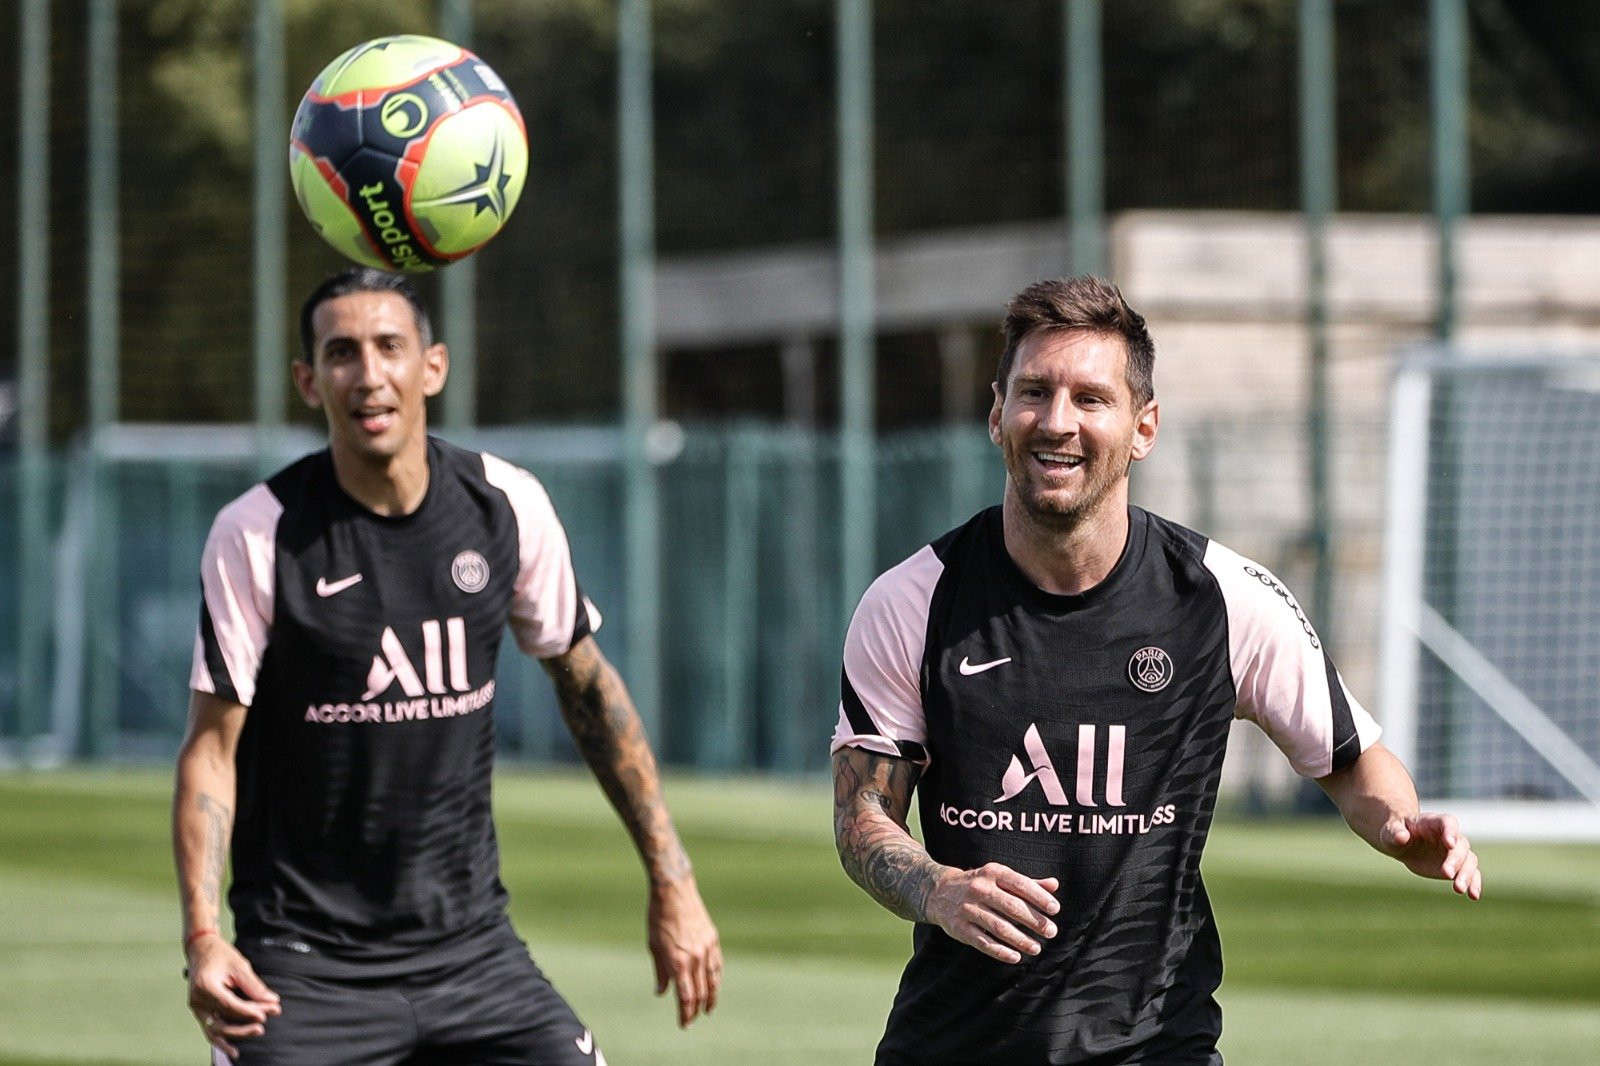 Leo Messi en un entrenamiento con el PSG, junto a Ángel Di María / PSG